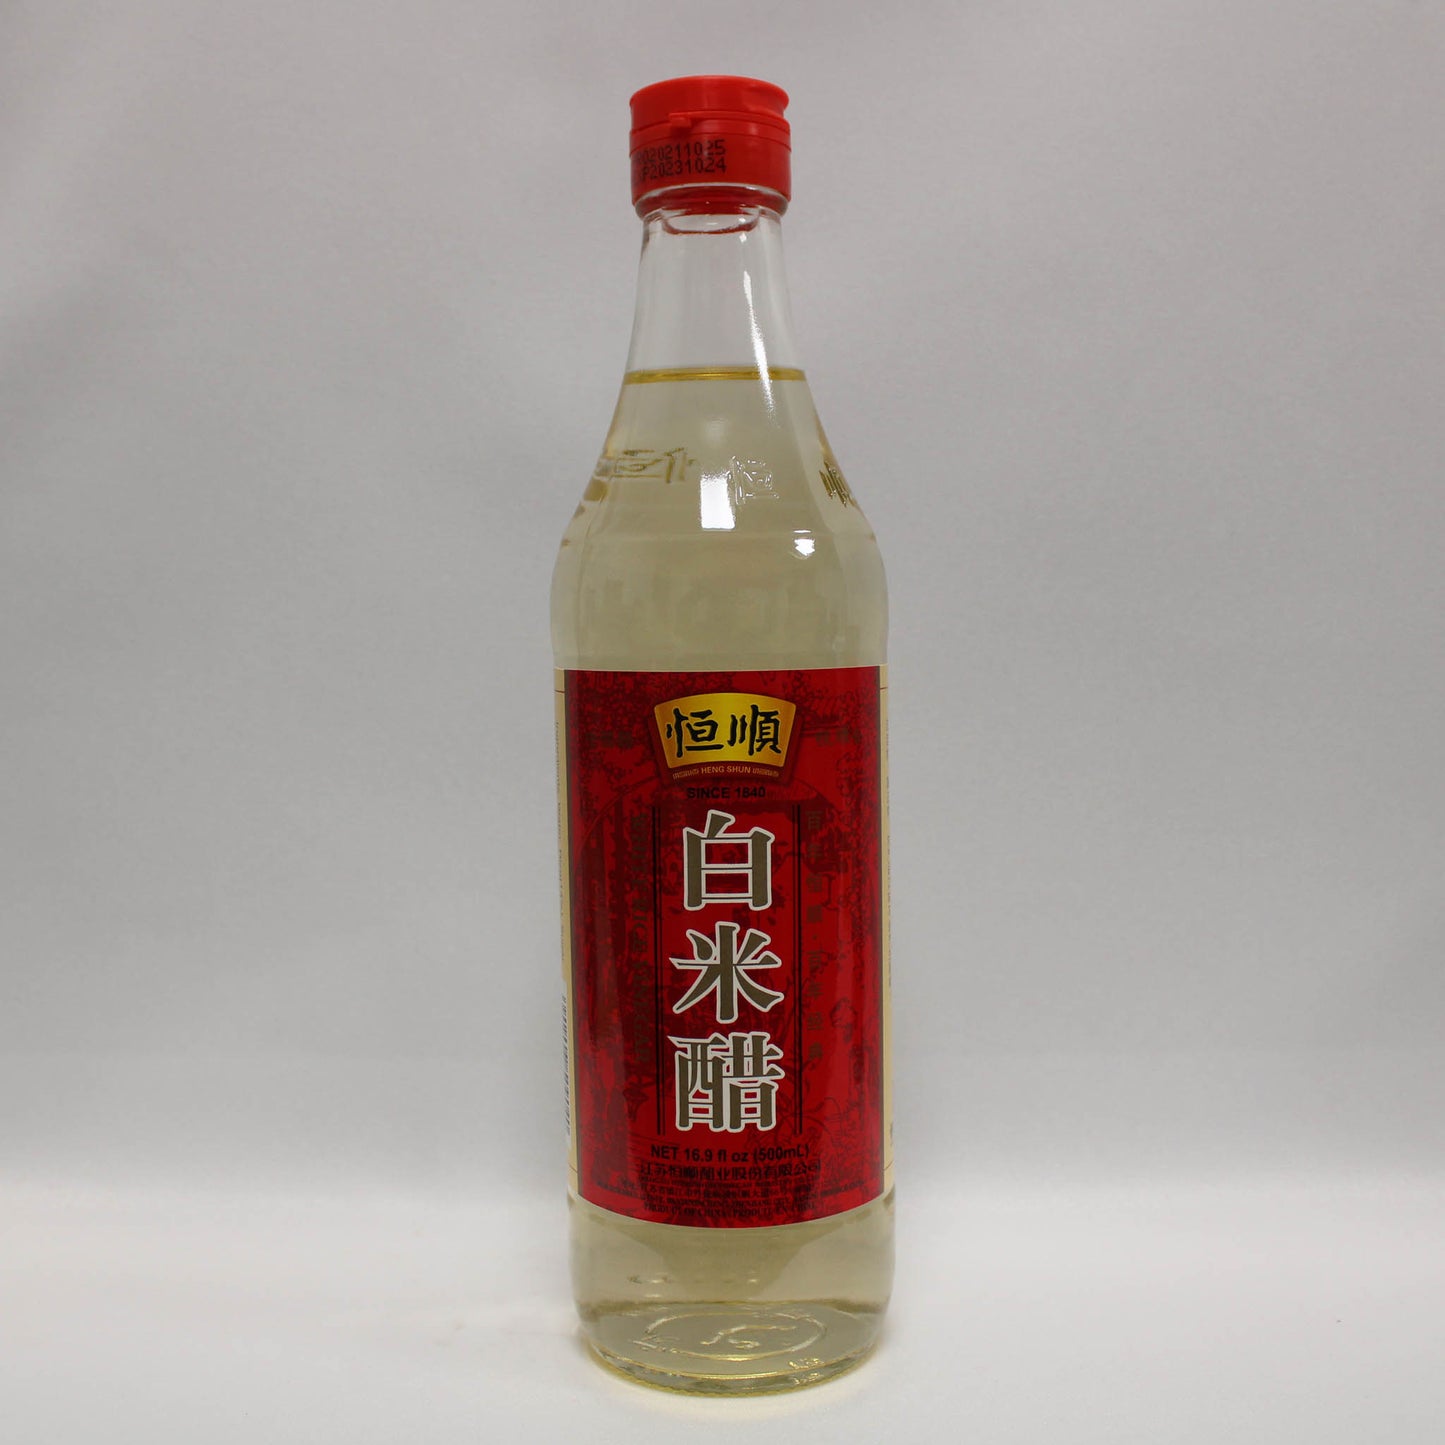 中坝白米醋 (500ml*12) 